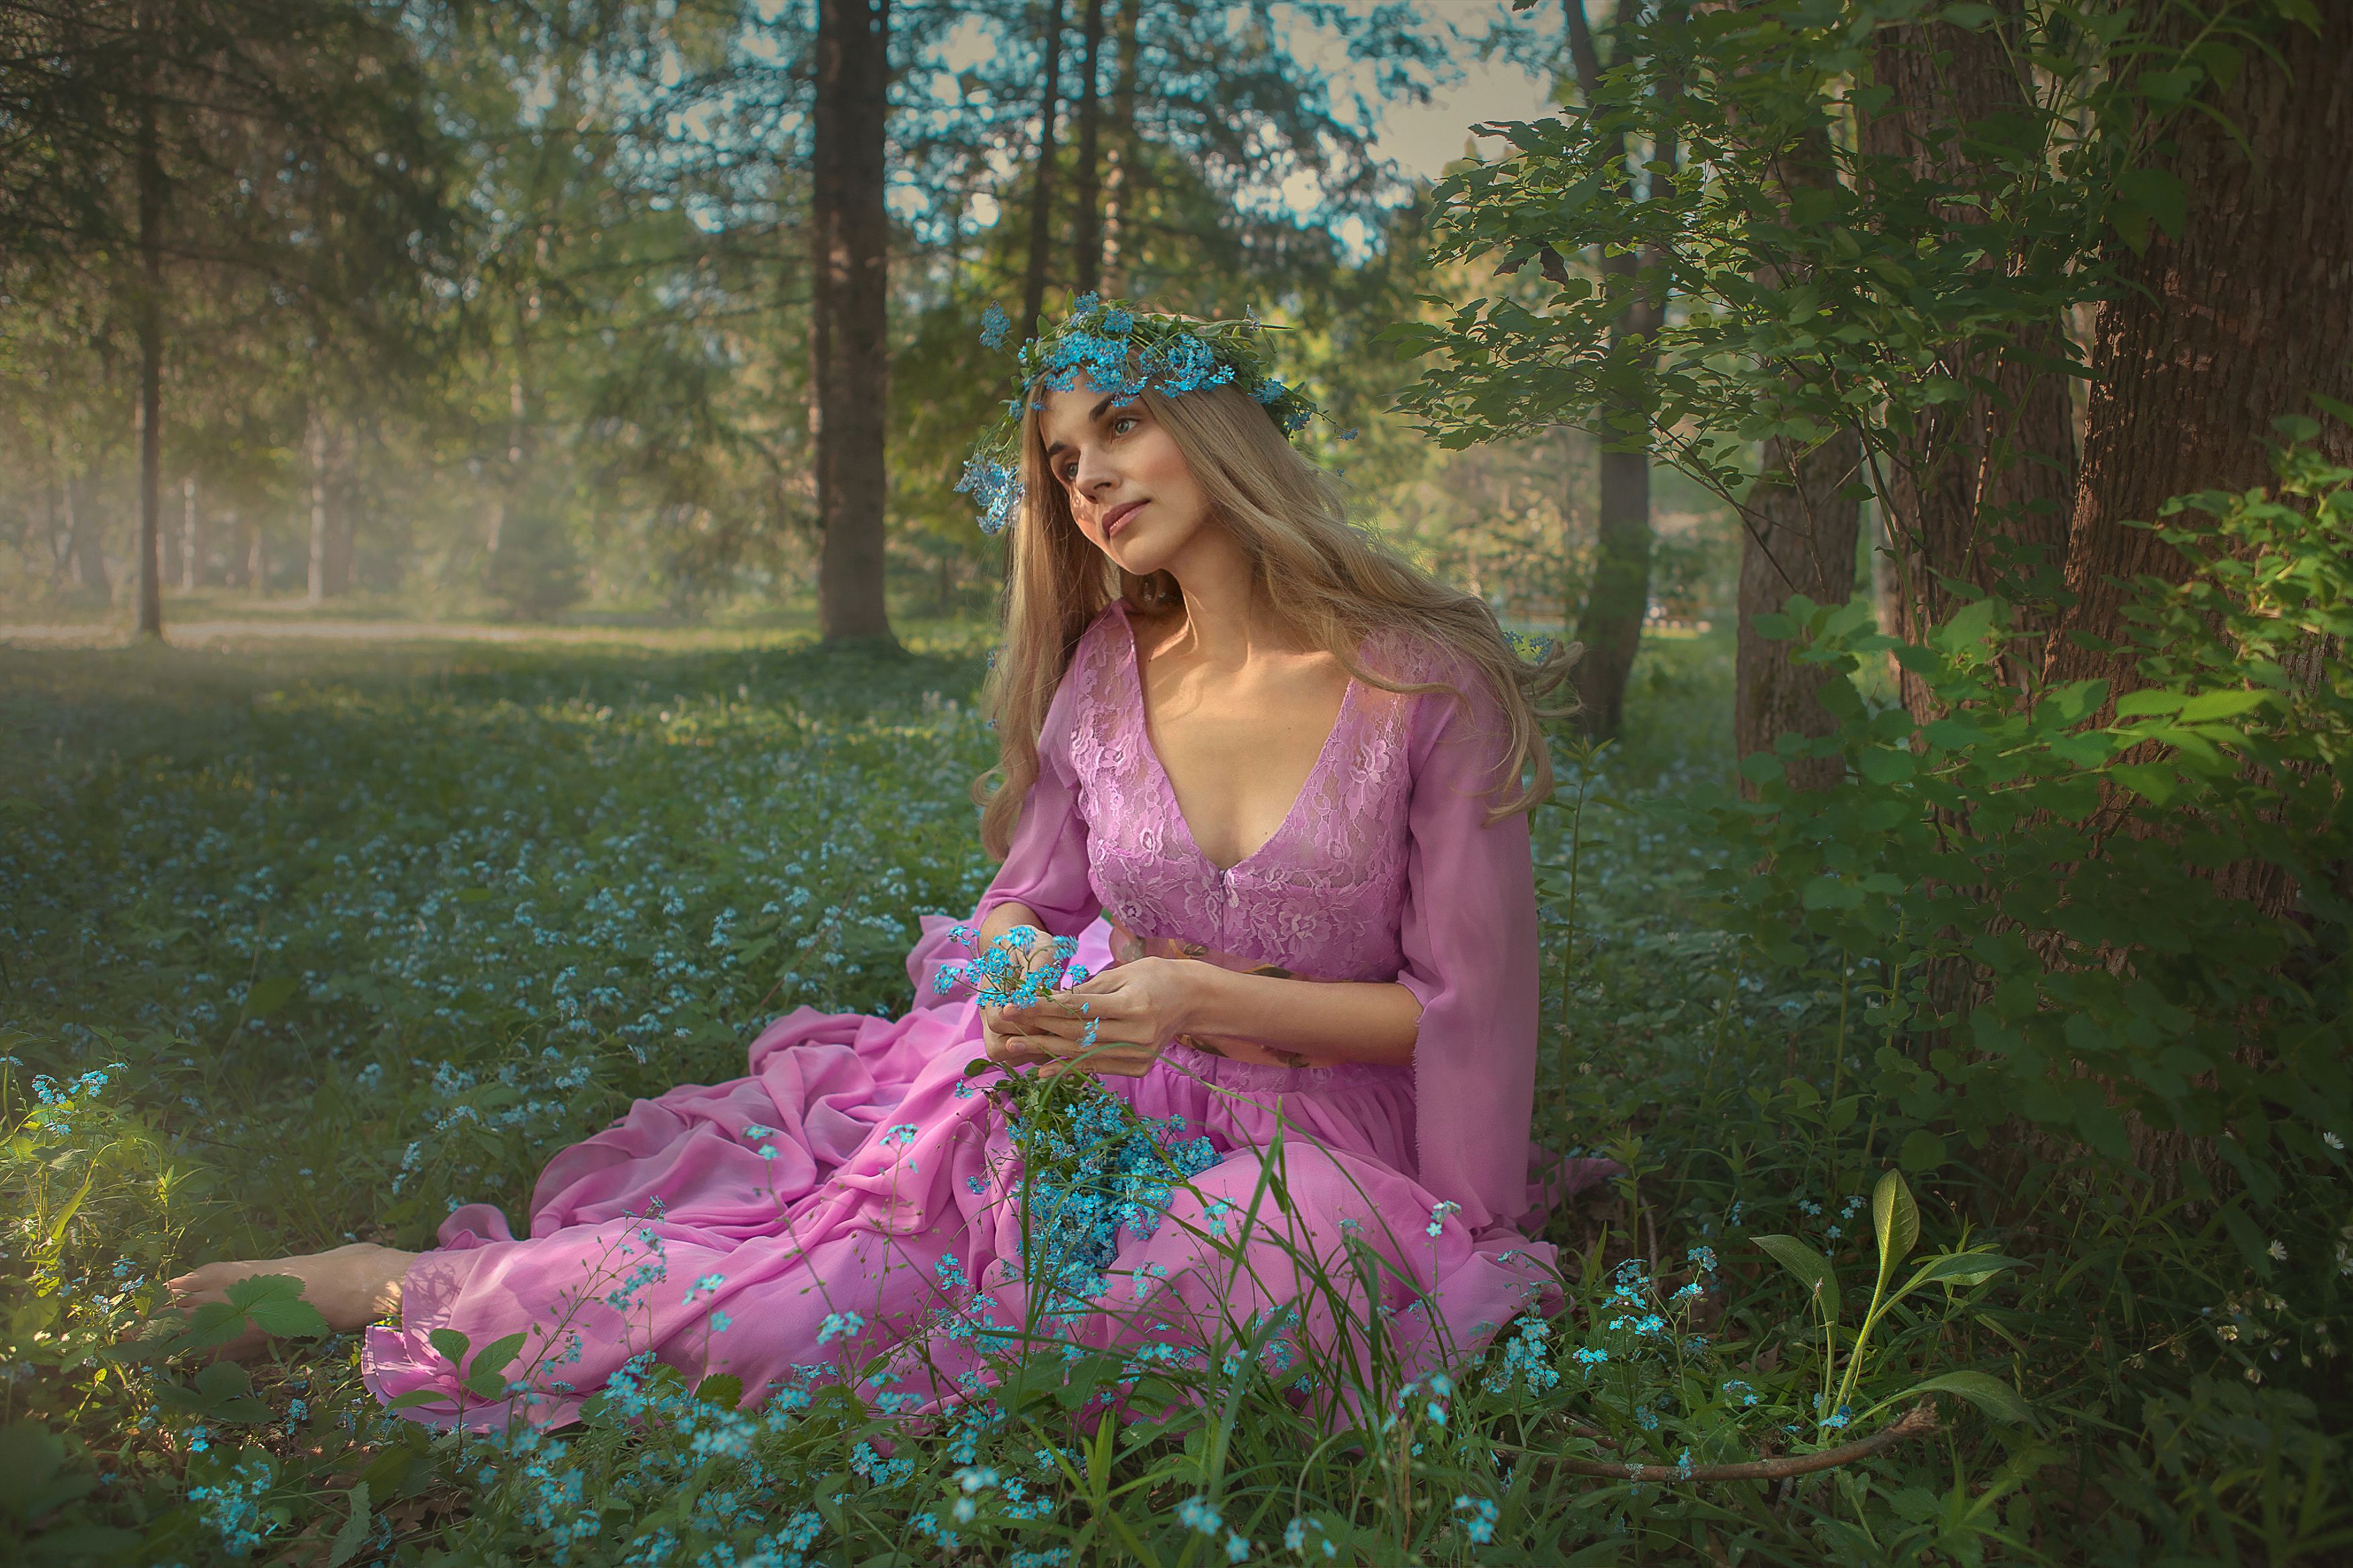 девушка цветы поле любовь солнце лето красота счастье мечты красавица фотография, Шепелева Татьяна